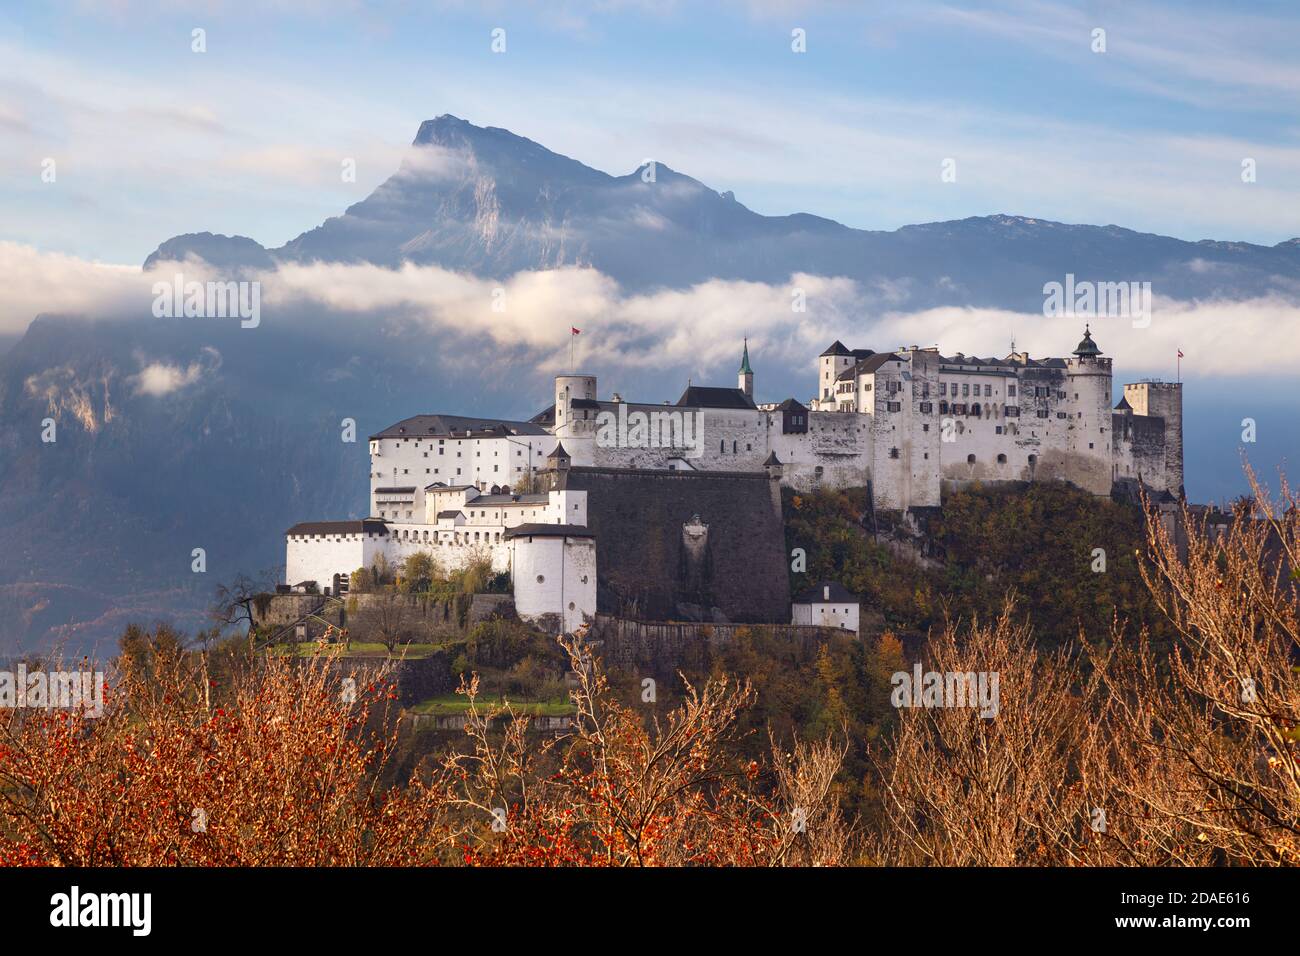 Festung Hohensalzburg. Bild der Festung Hohensalzburg mit Bergkette im Hintergrund in Salzburg, Österreich bei schönem Herbstaufgang Stockfoto